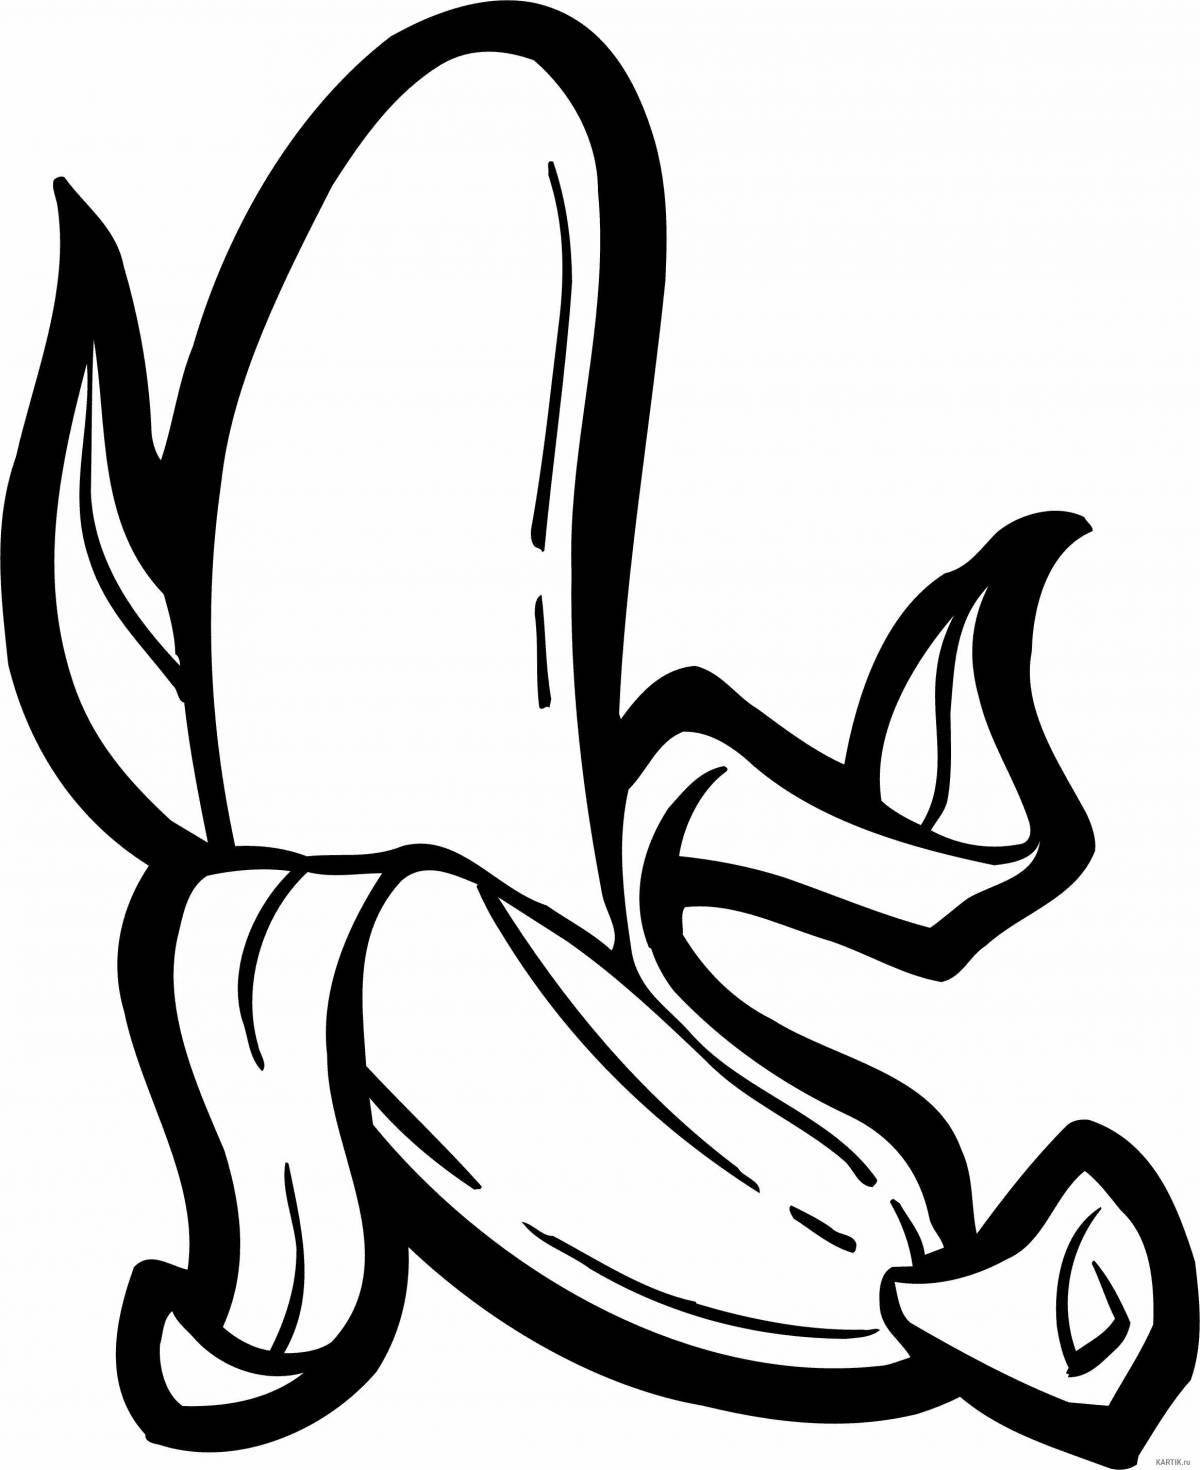 Attractive banana drawing